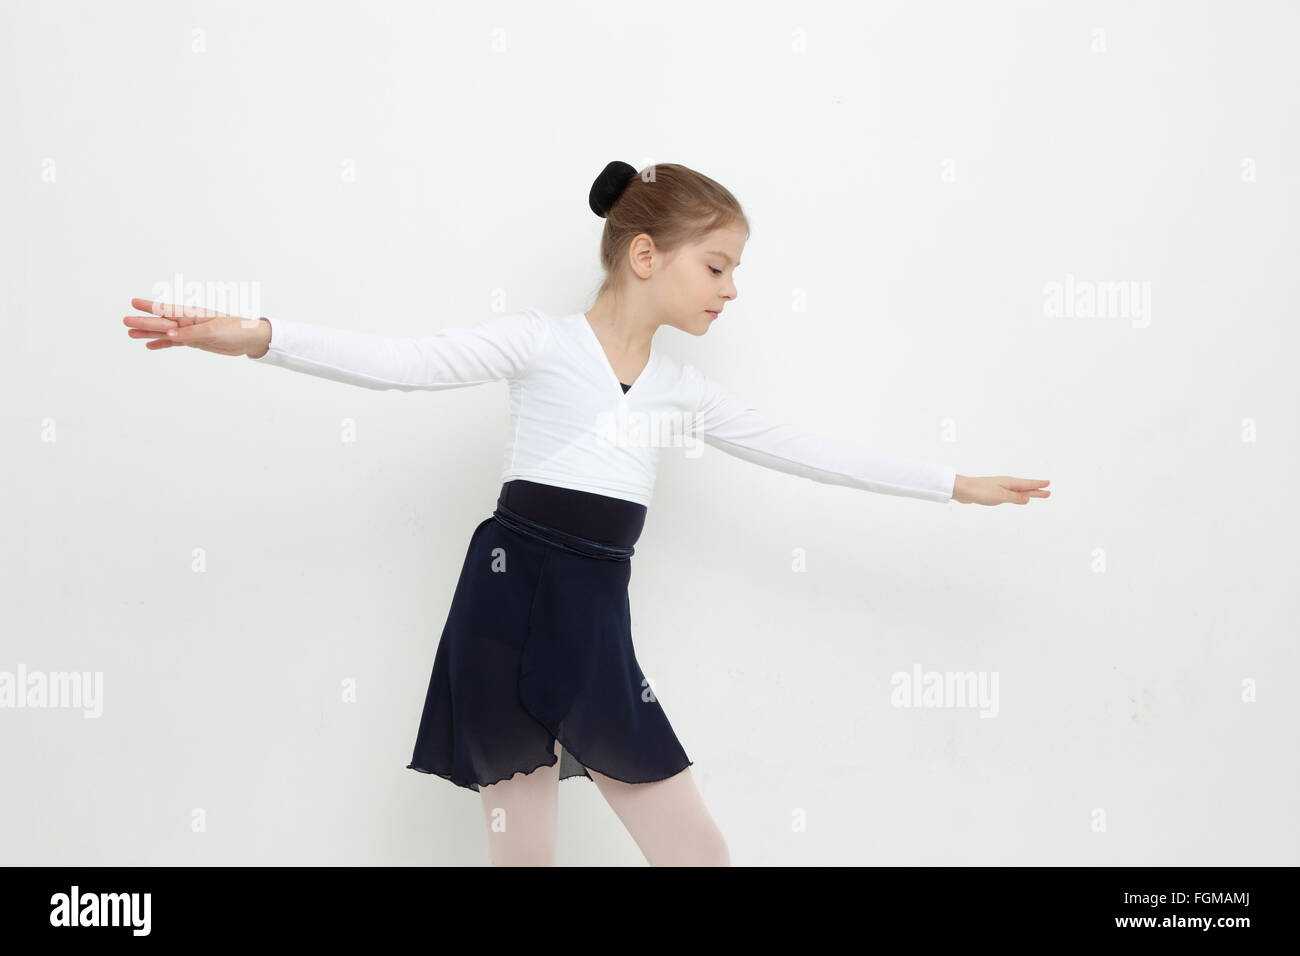 Schöne kaukasischen junge Ballerina posiert vor der Kamera Stockfoto